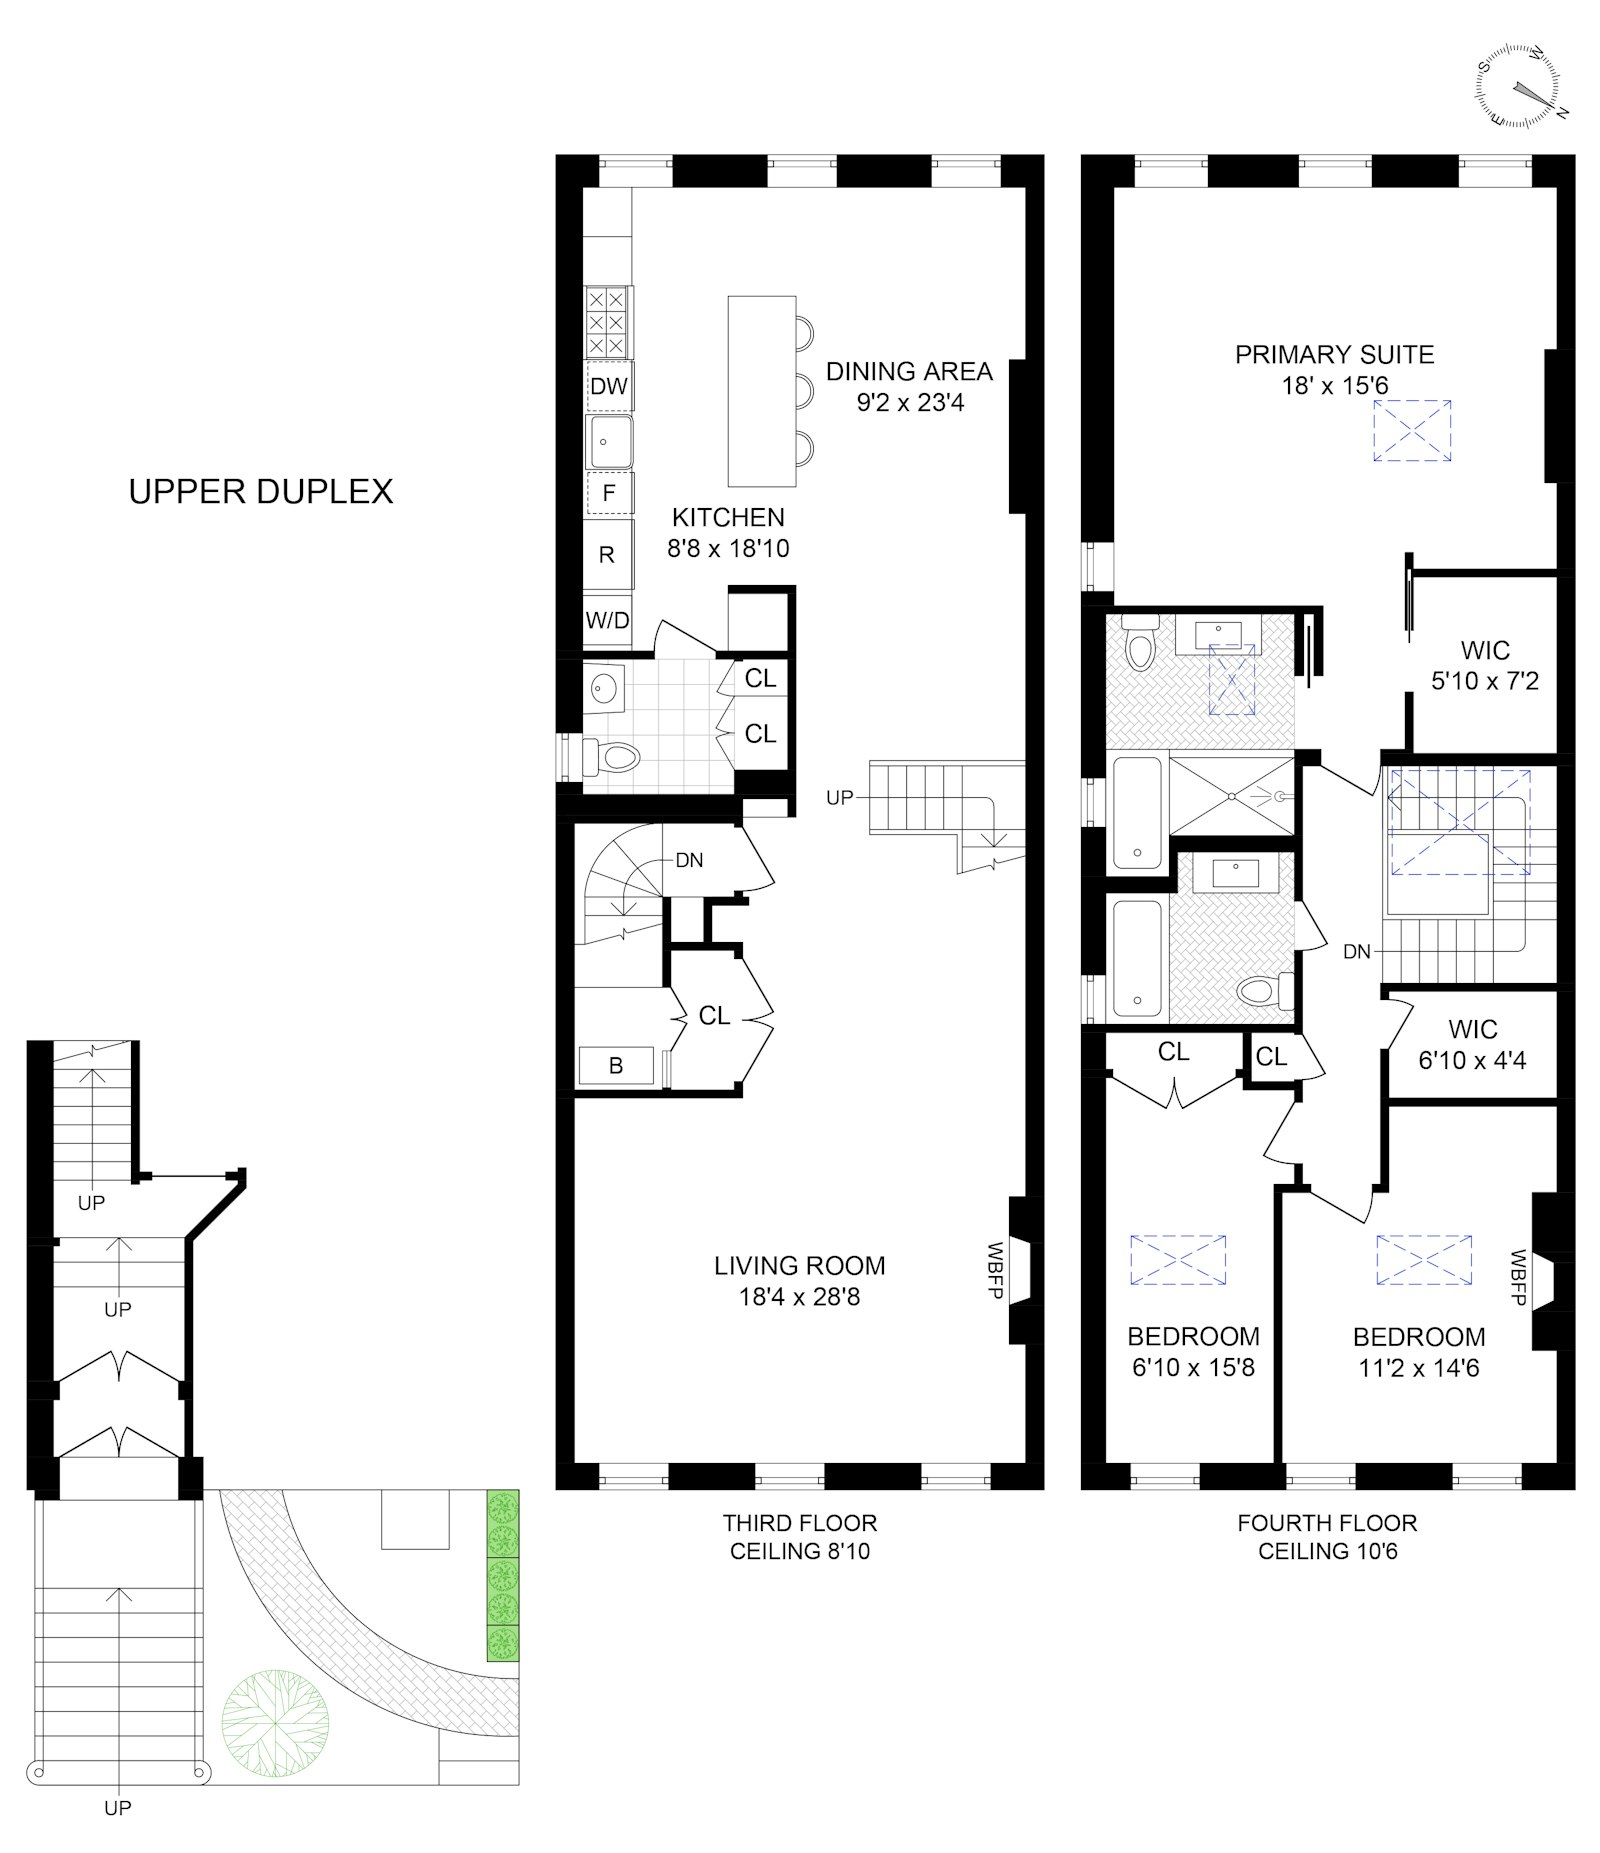 Floorplan for 104 West 13th Street, DUPLEX